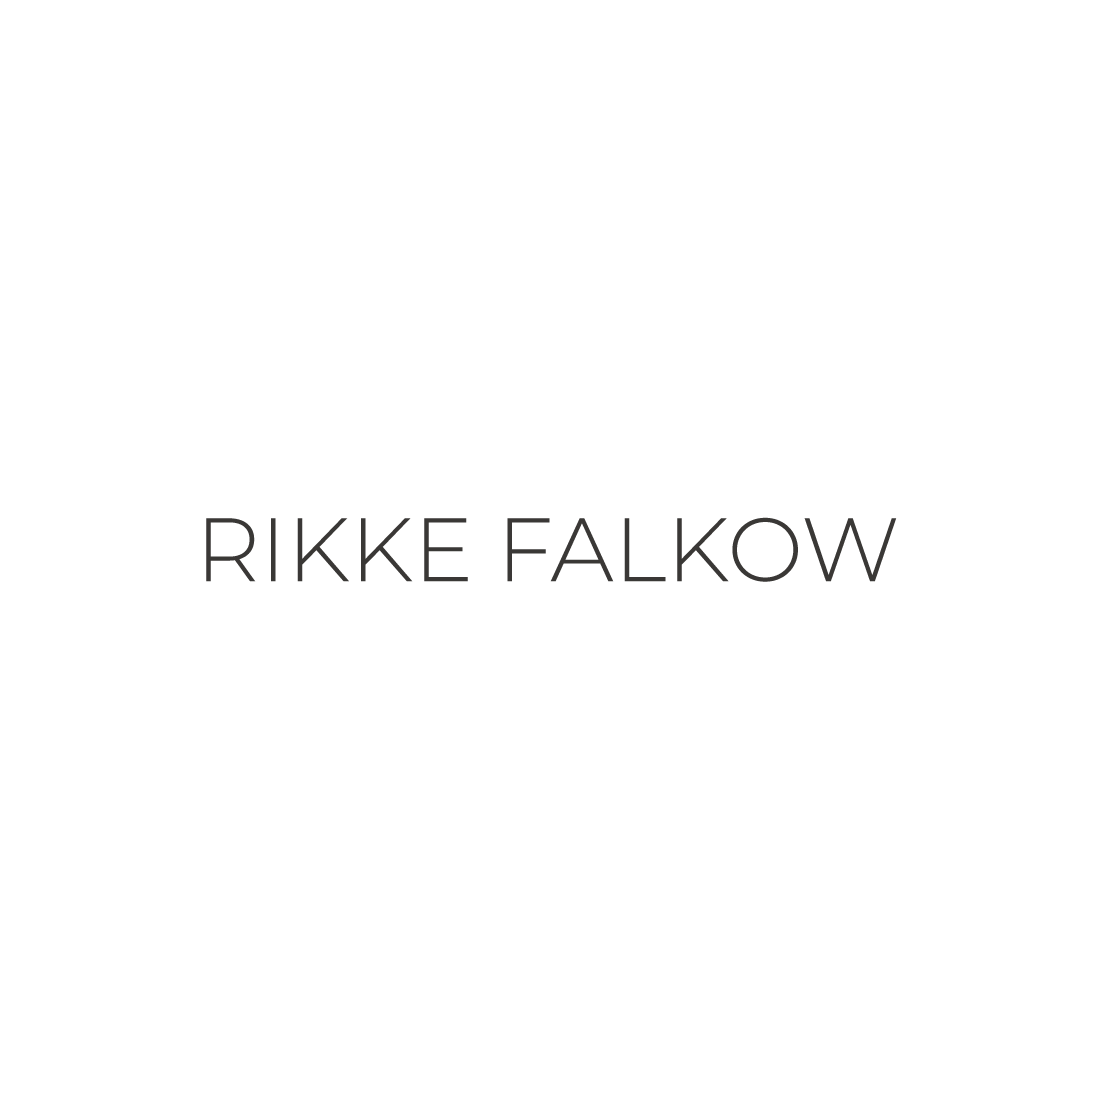 Rikke Falkow logo